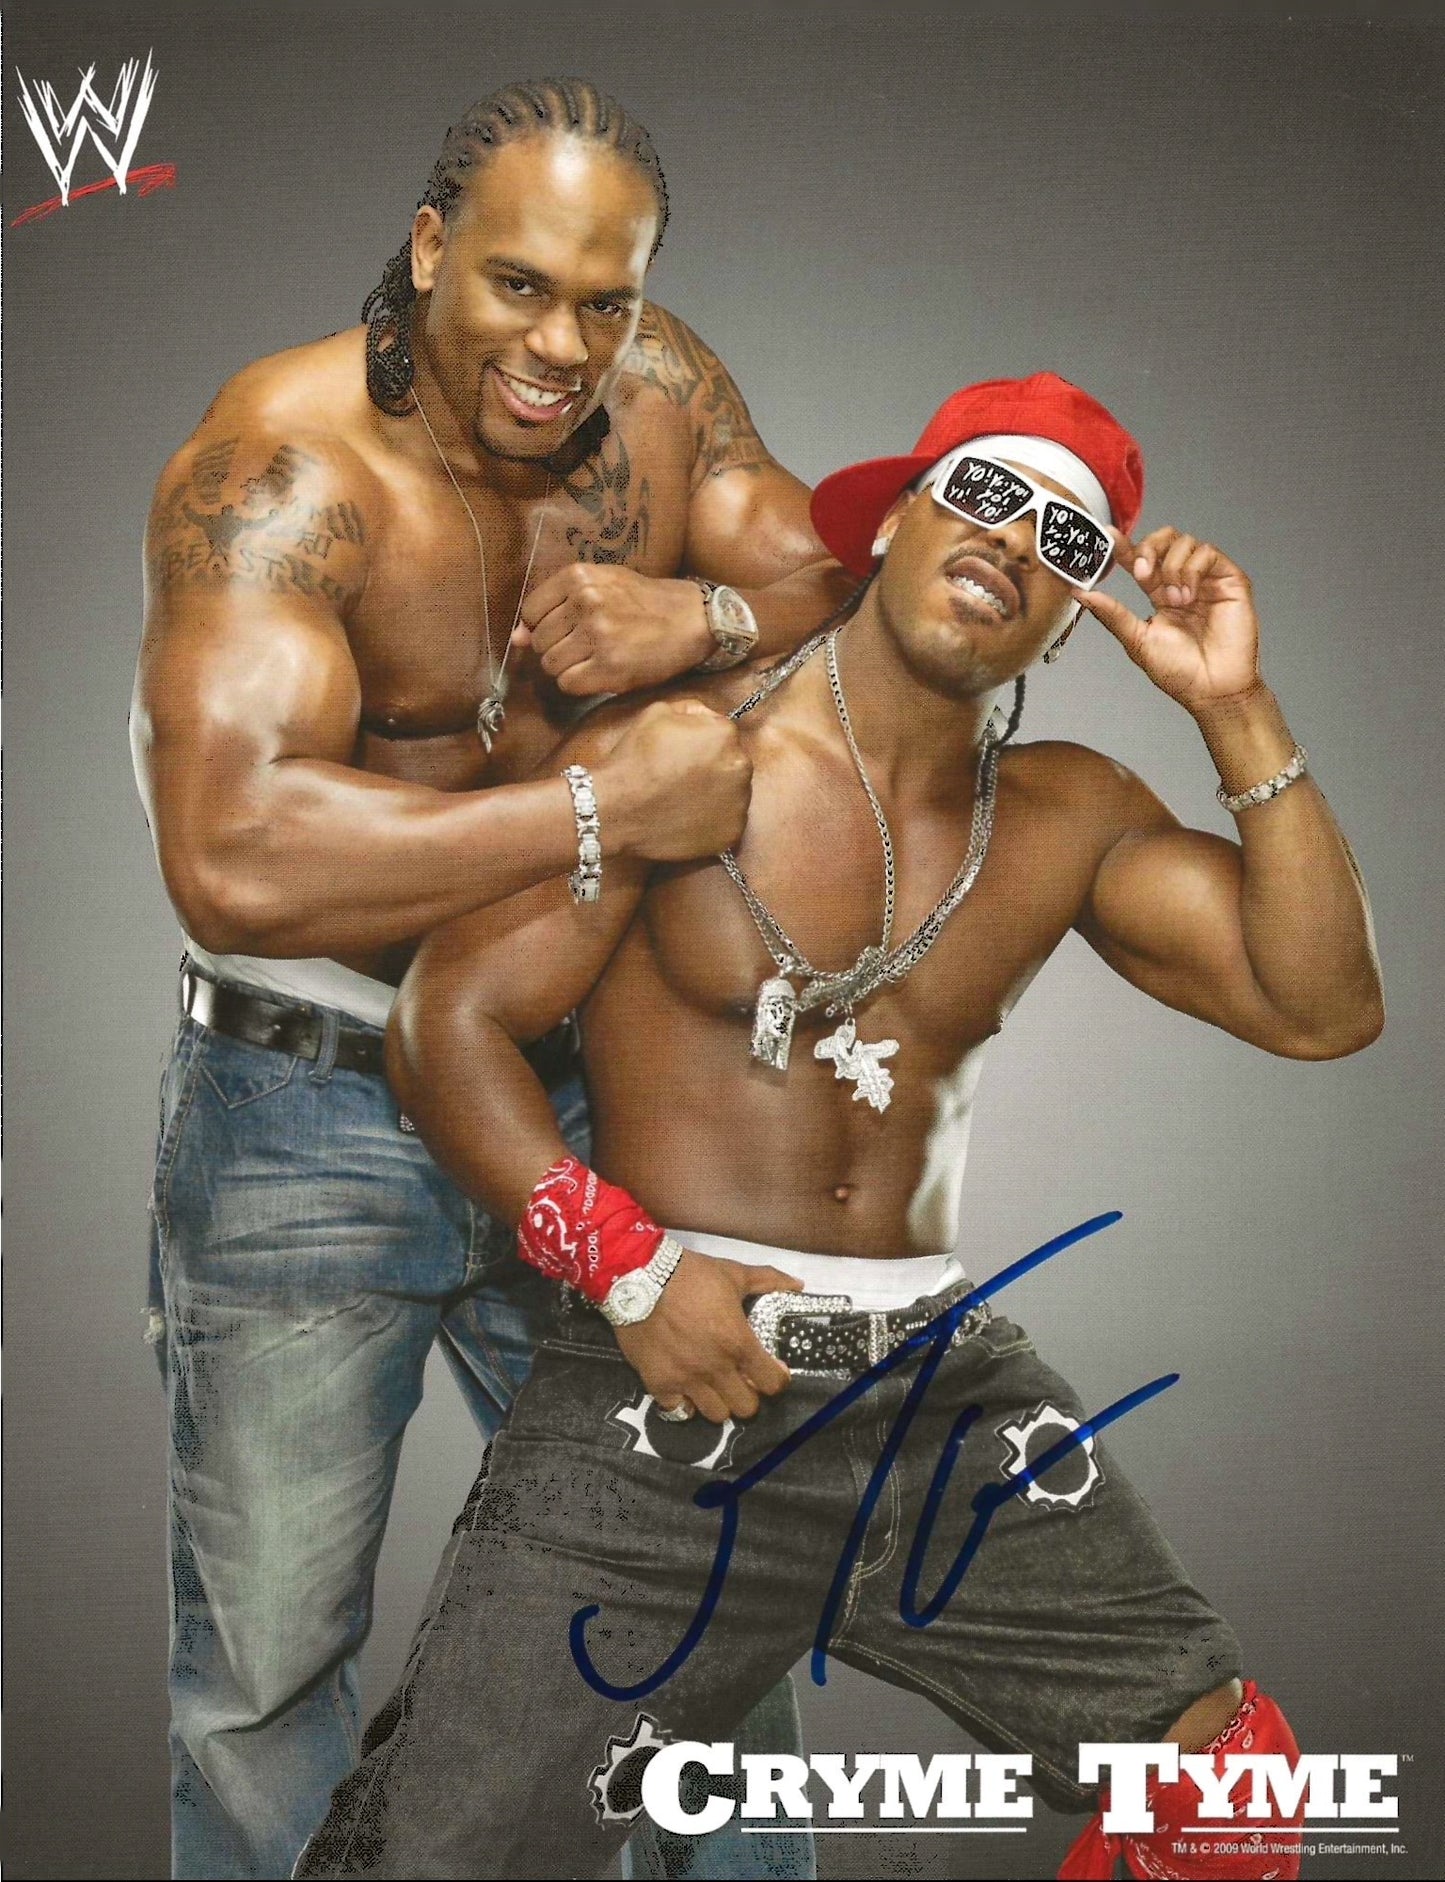 Jtg Autographed Signed "WWE" 8X10 Photo Elite Promotions & Graphz Authentication